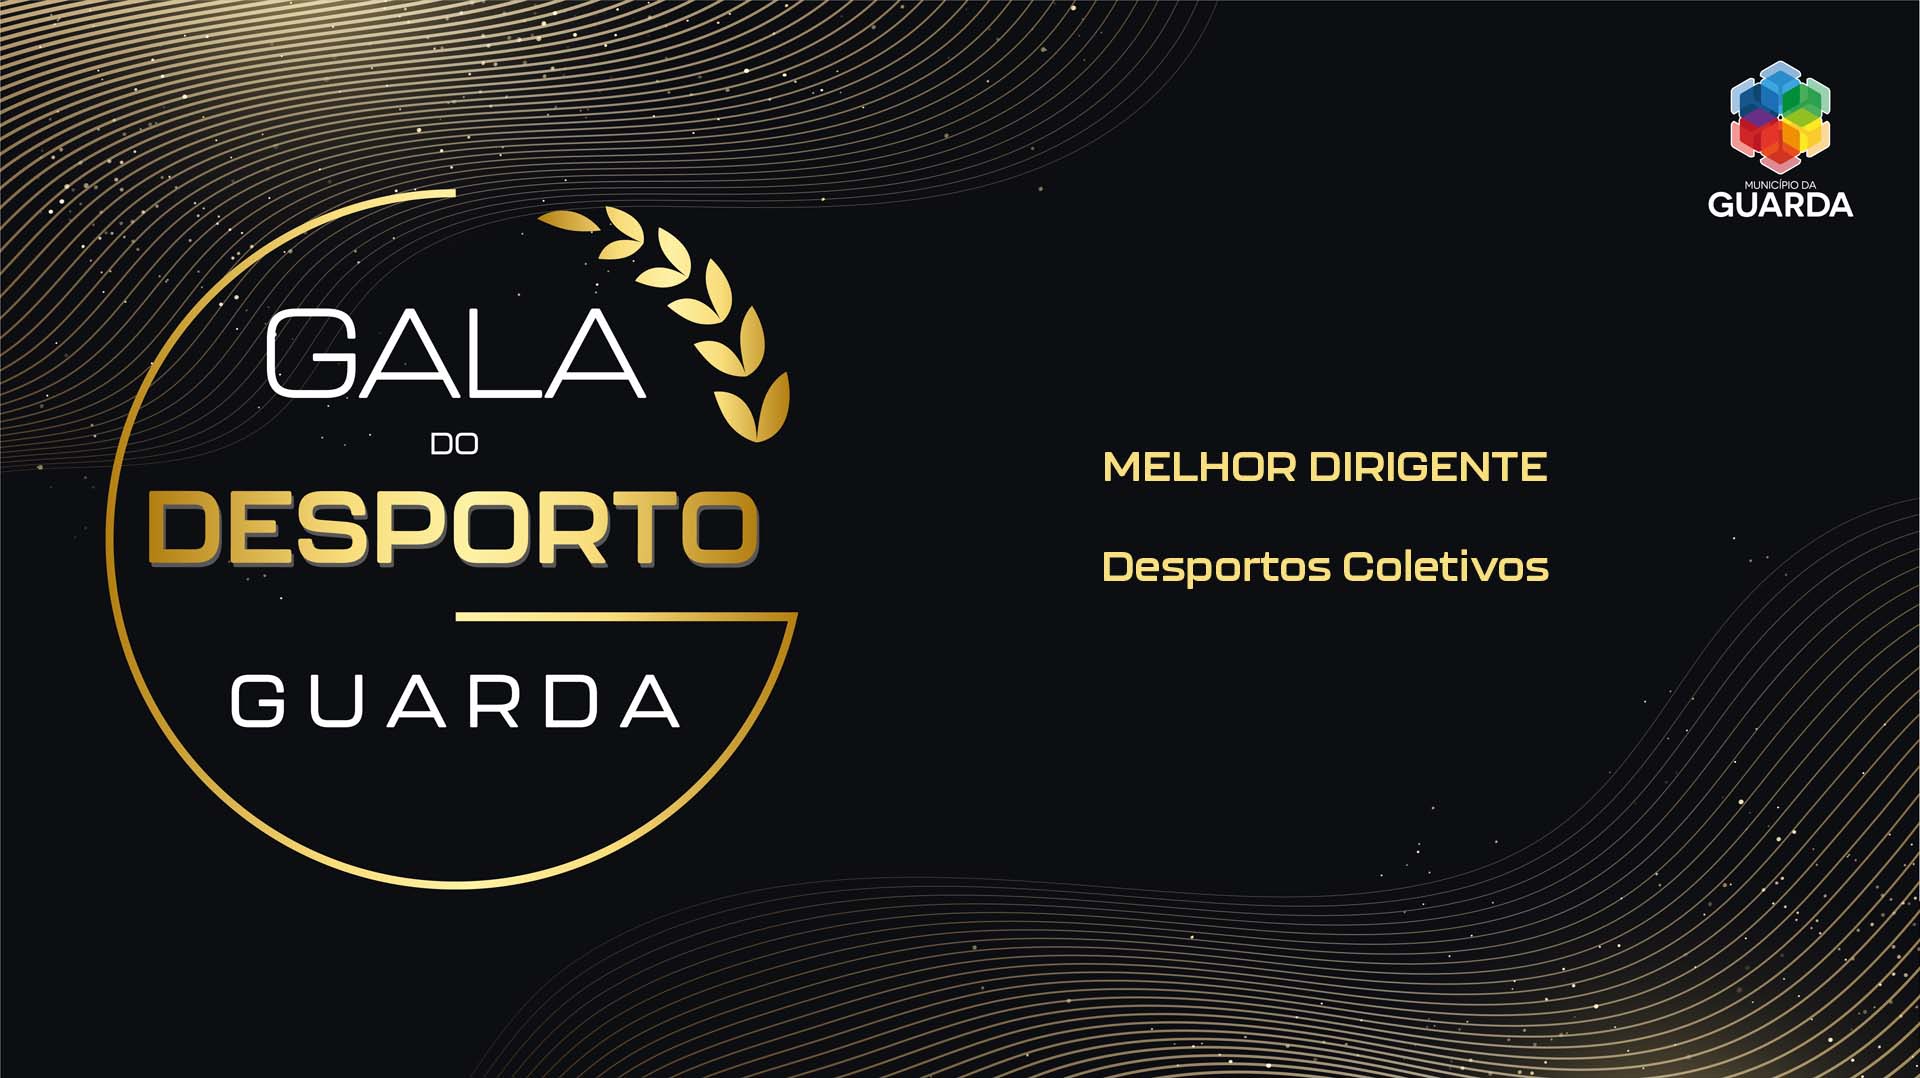 Imagem: MELHOR DIRIGENTE - Desportos Coletivos